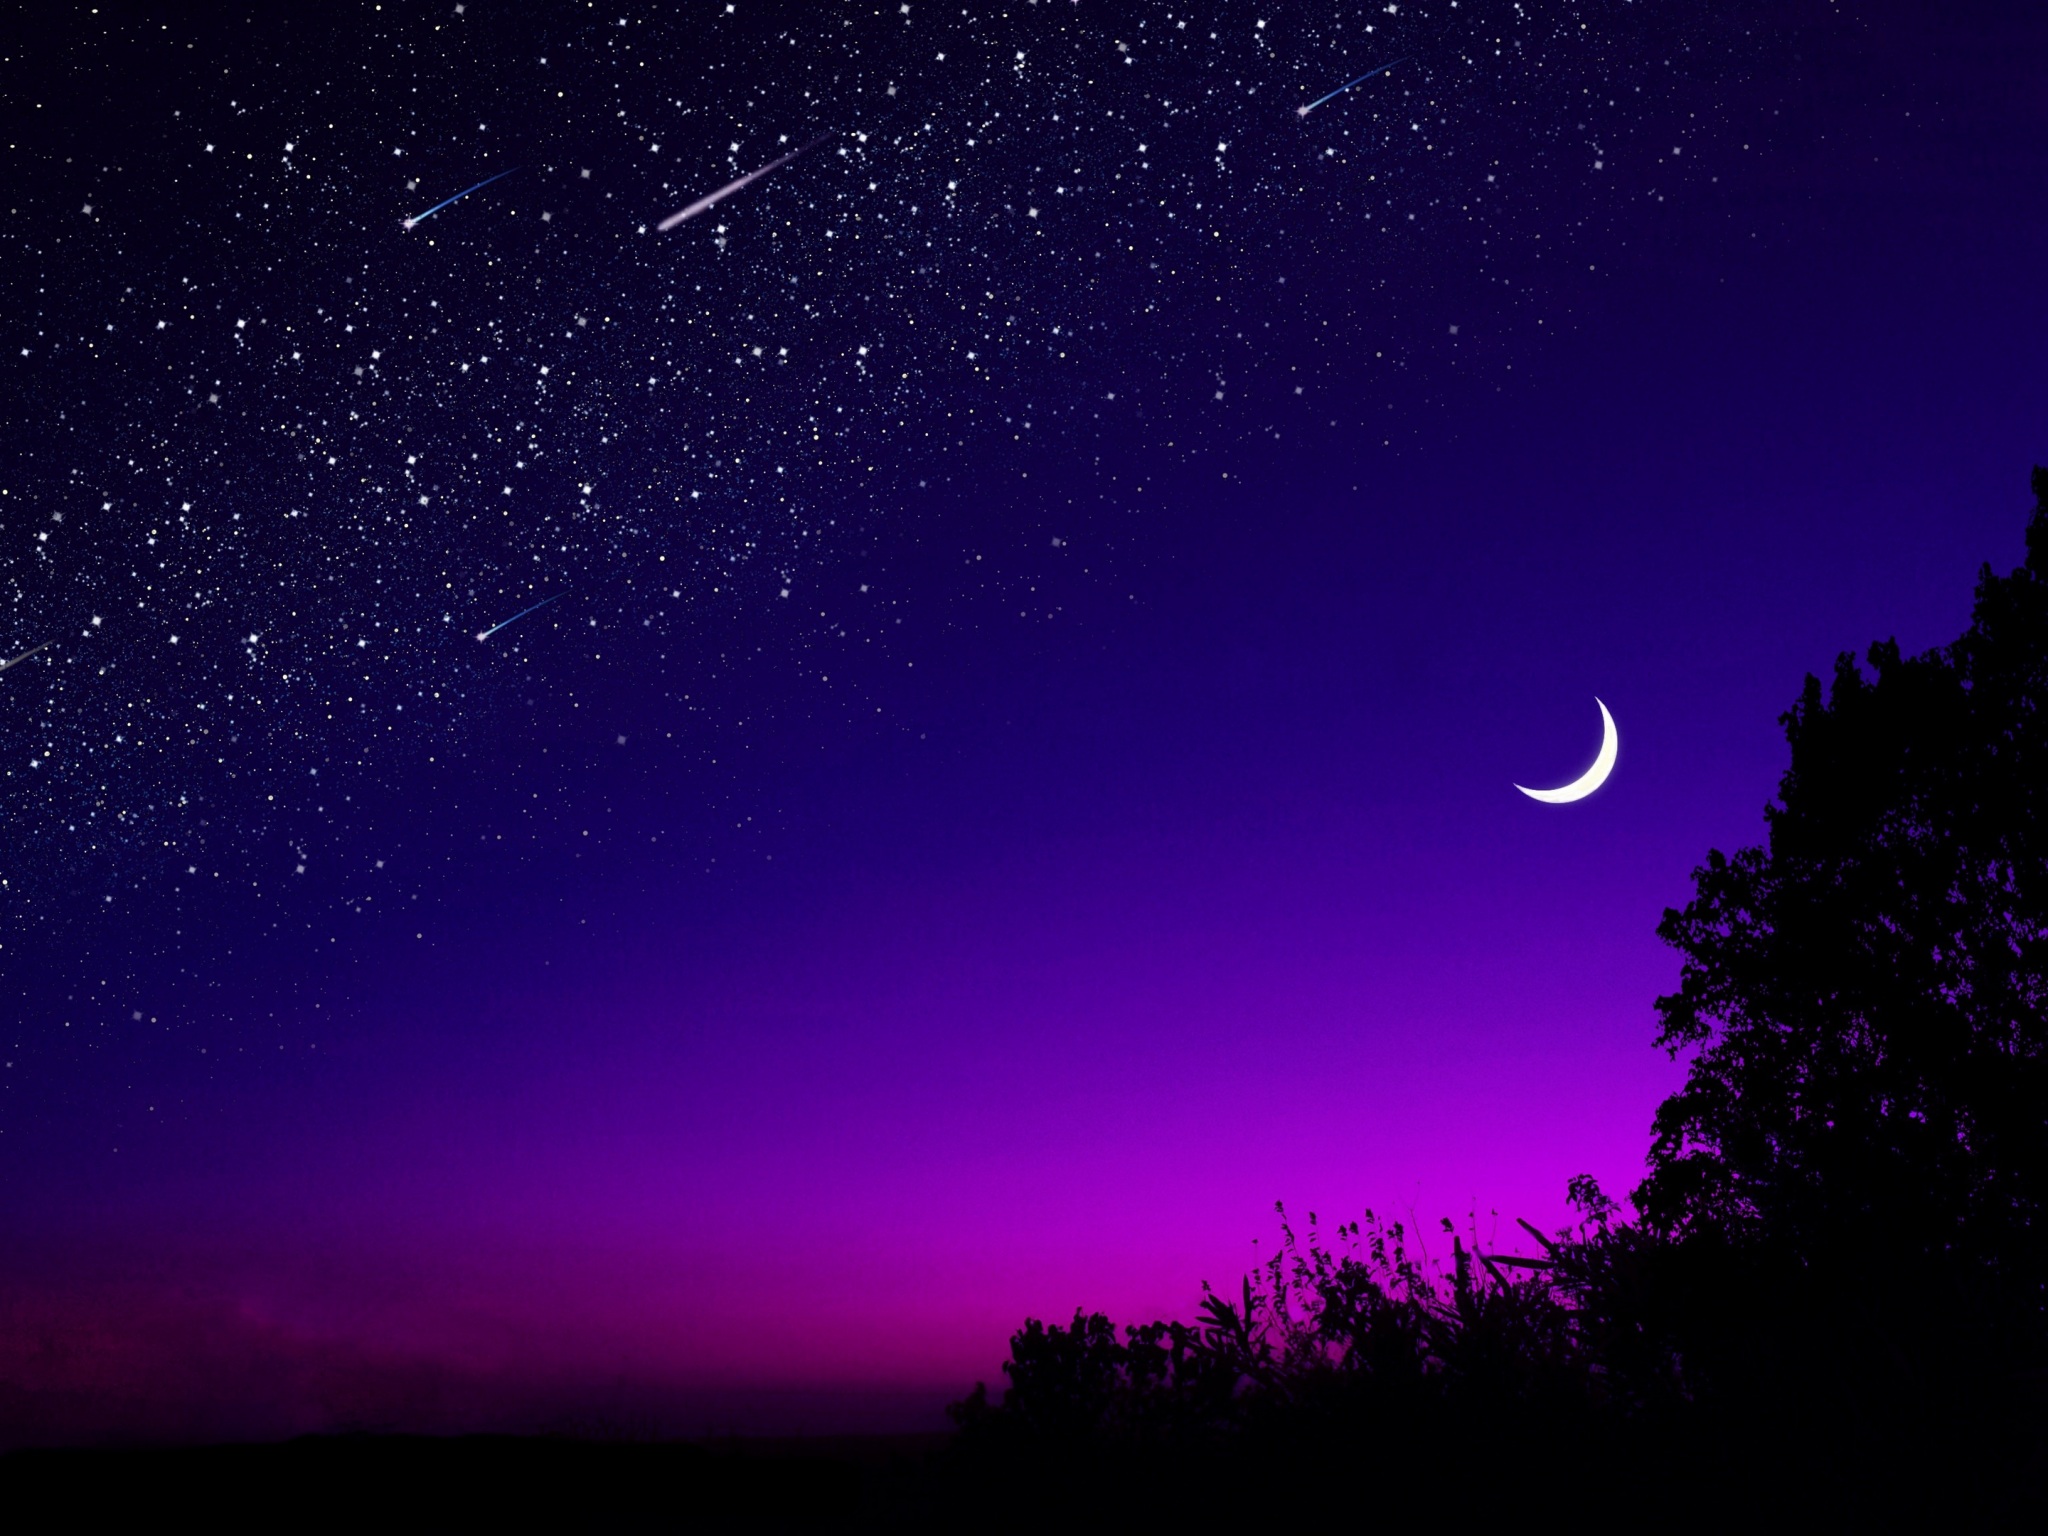 Đêm (night): Đêm đẹp như trăng khuyết, khi oánh chén rượu hoa cũng chẳng bằng tất cả những thứ mà bạn có thể thấy được vào ban đêm. Góc nhìn độc đáo, không khí lặng lẽ chỉ có lúc đêm xuống thật là tuyệt vời.